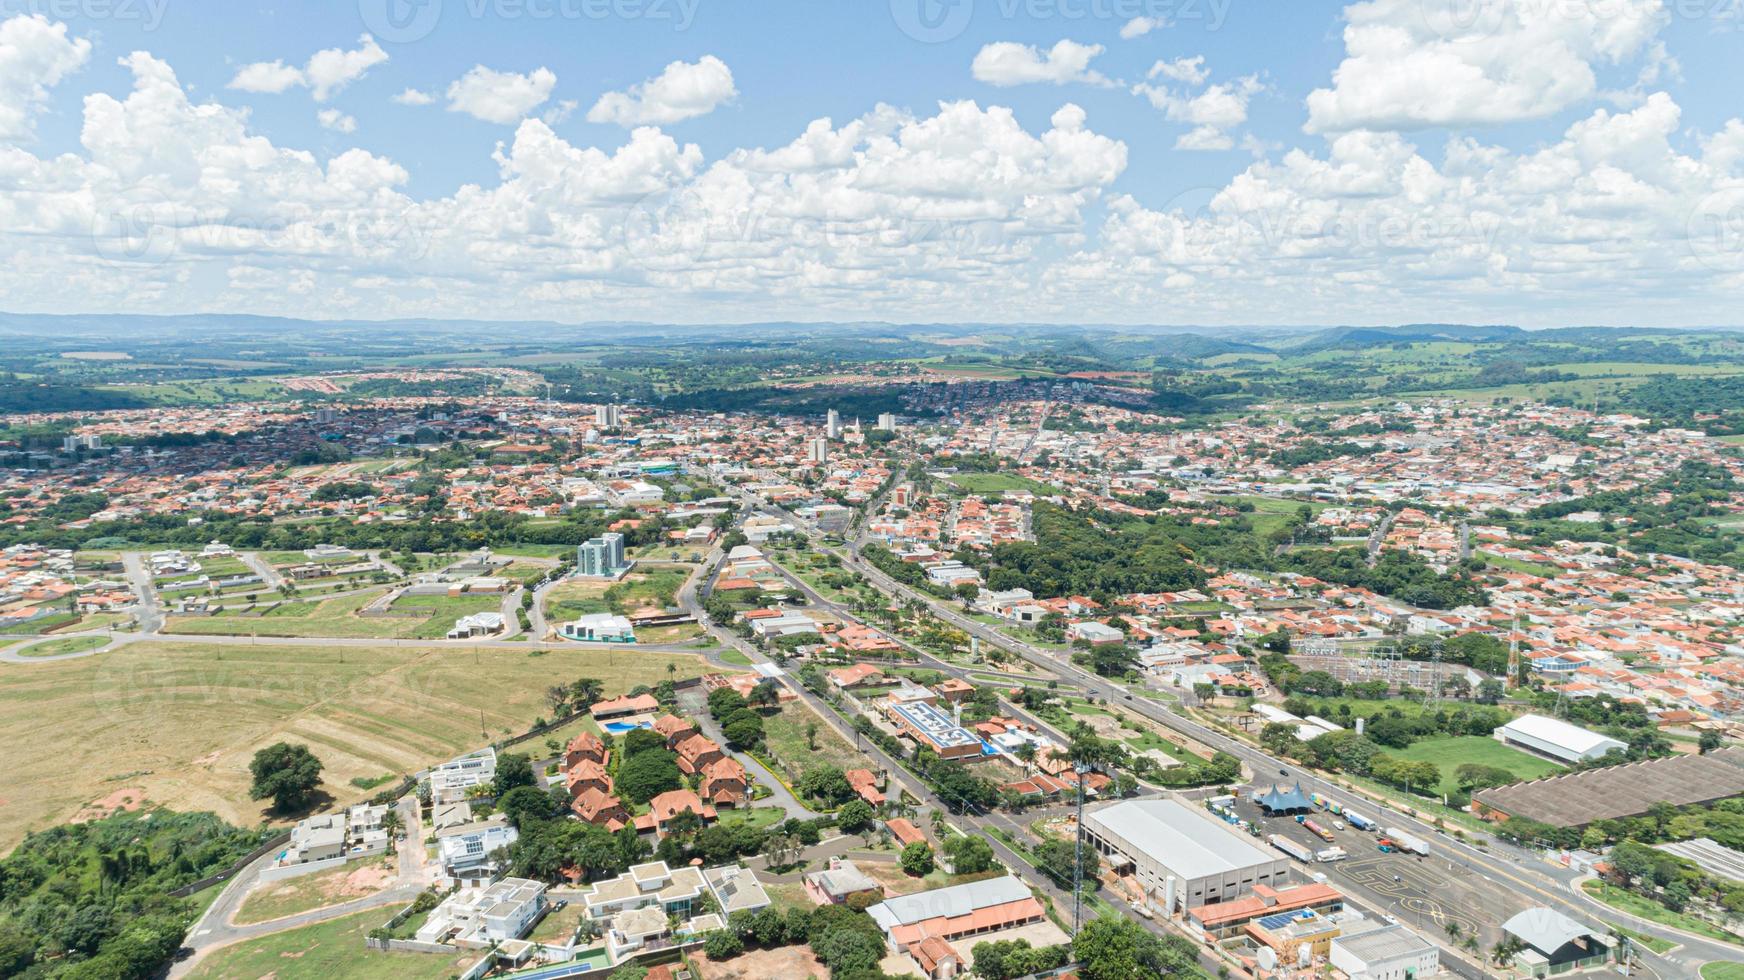 vista aerea de la ciudad de mococa foto